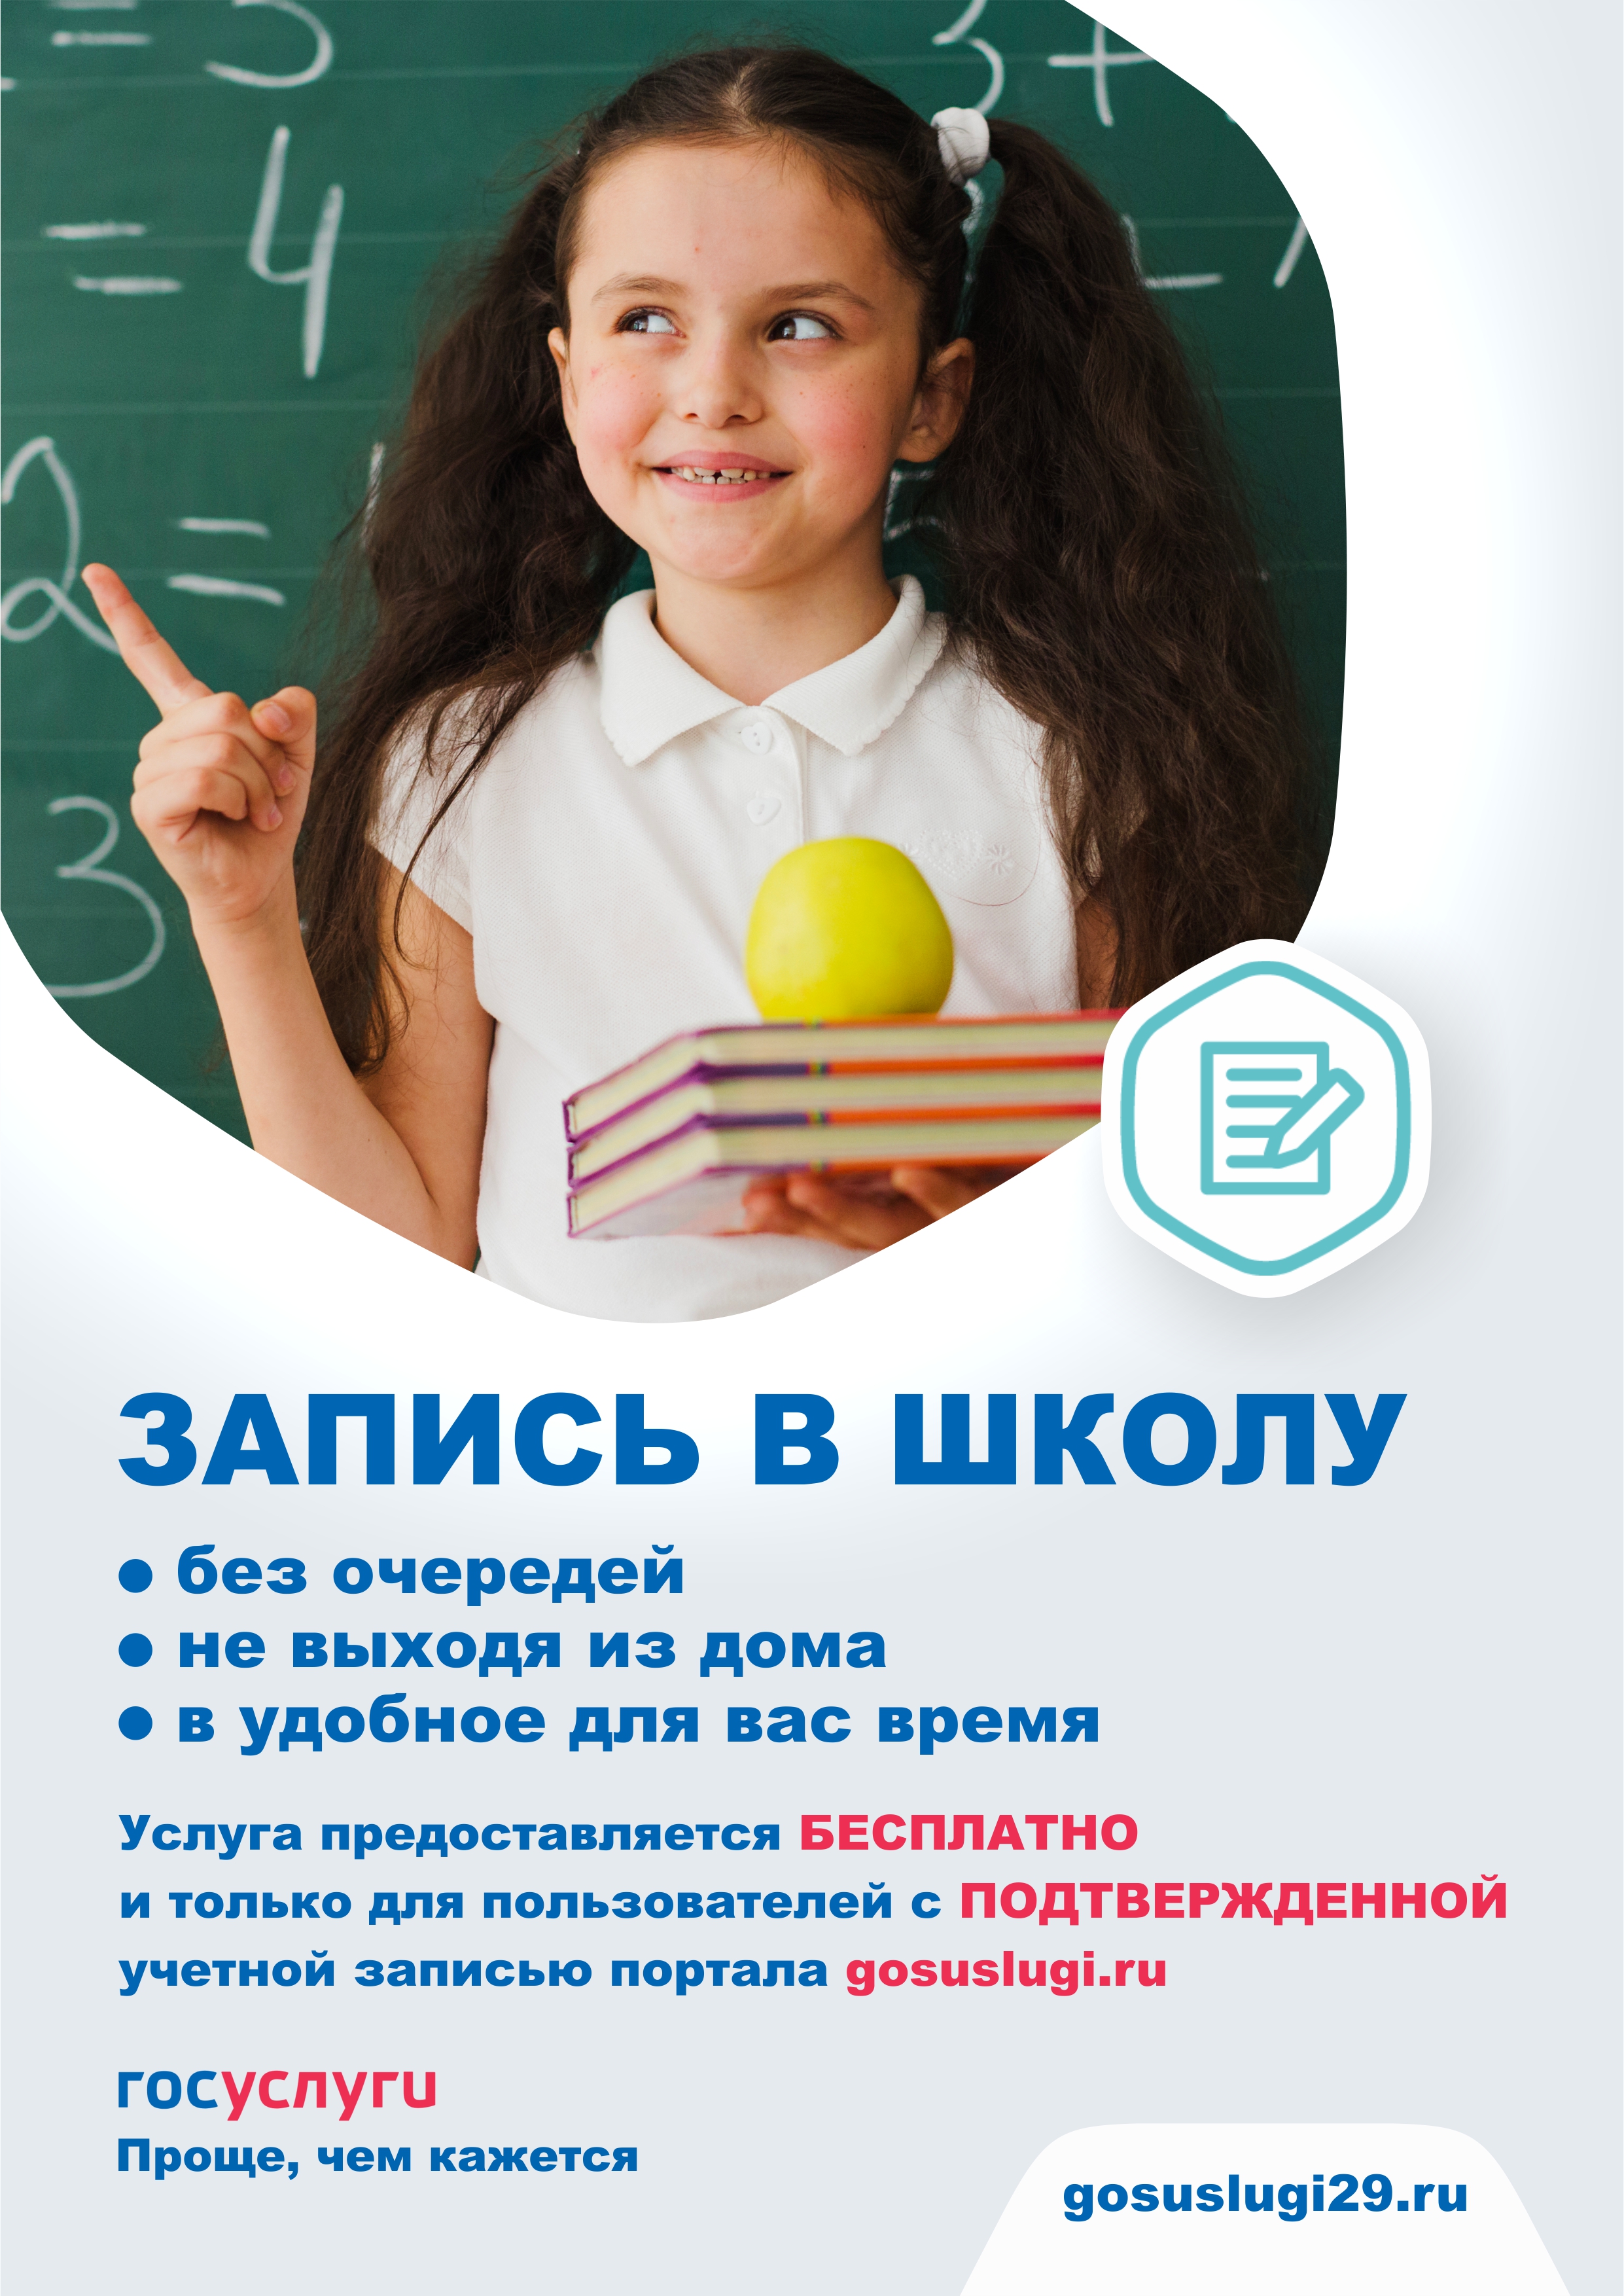 Записаться в школу московская область. Запись в школу. Запись ребенка в школу. Записаться в школу. Запись в образовательное учреждение.